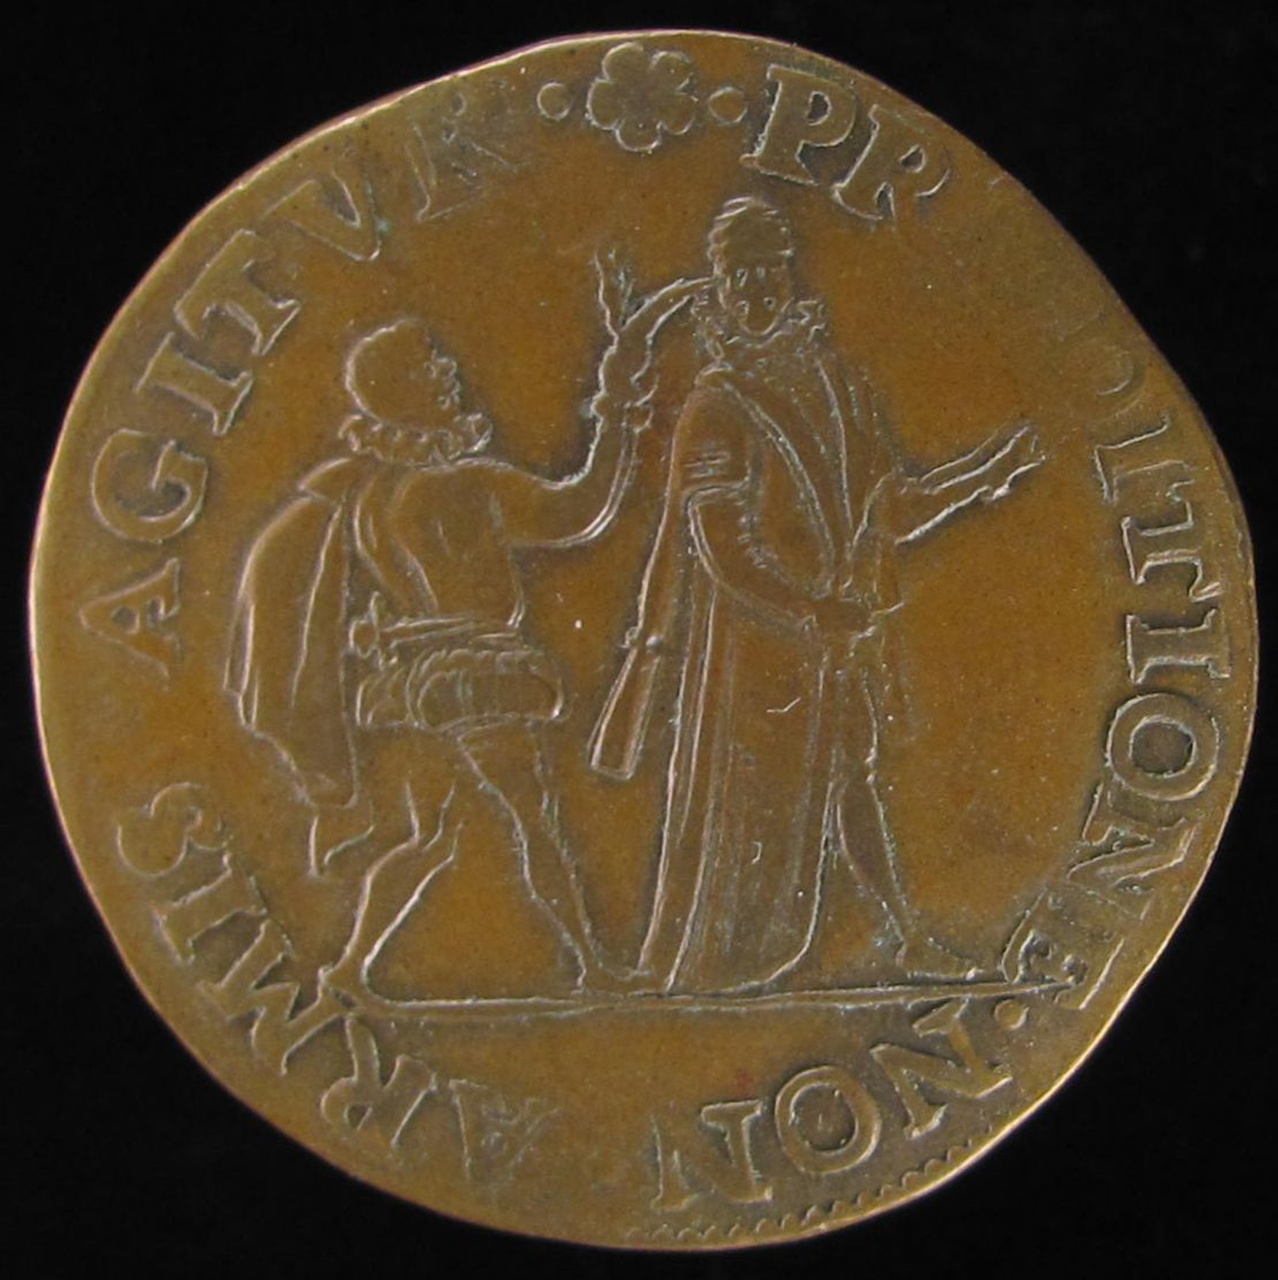 Aanslag van Jean Jaureguy op de prins van Oranje, 1582